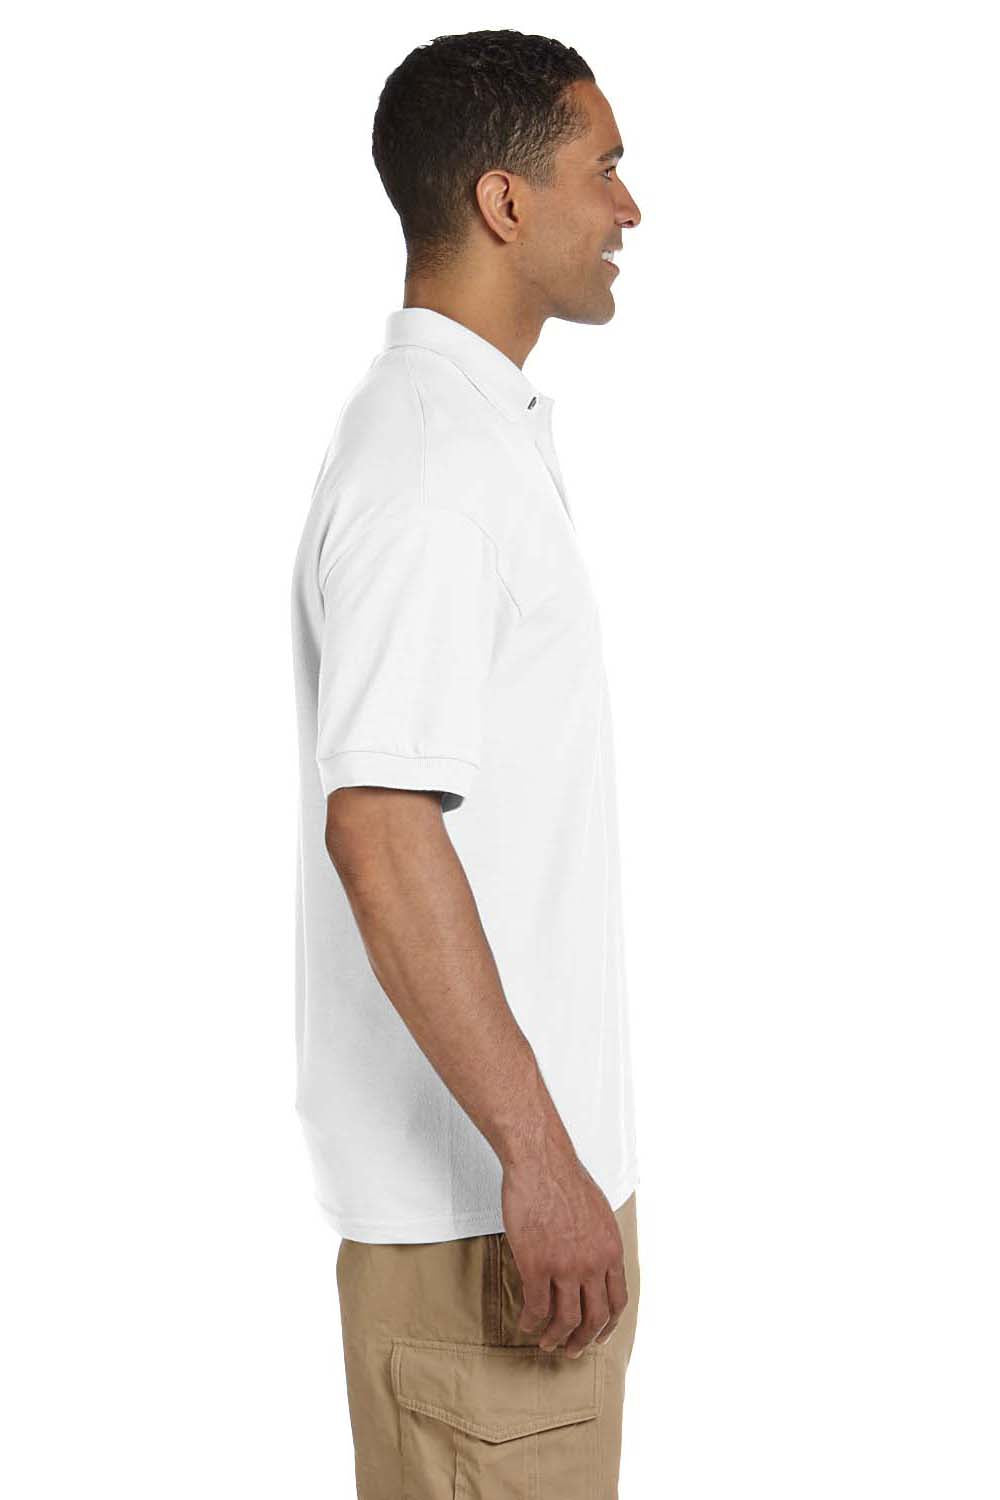 Gildan G380 Mens Short Sleeve Polo Shirt White Side